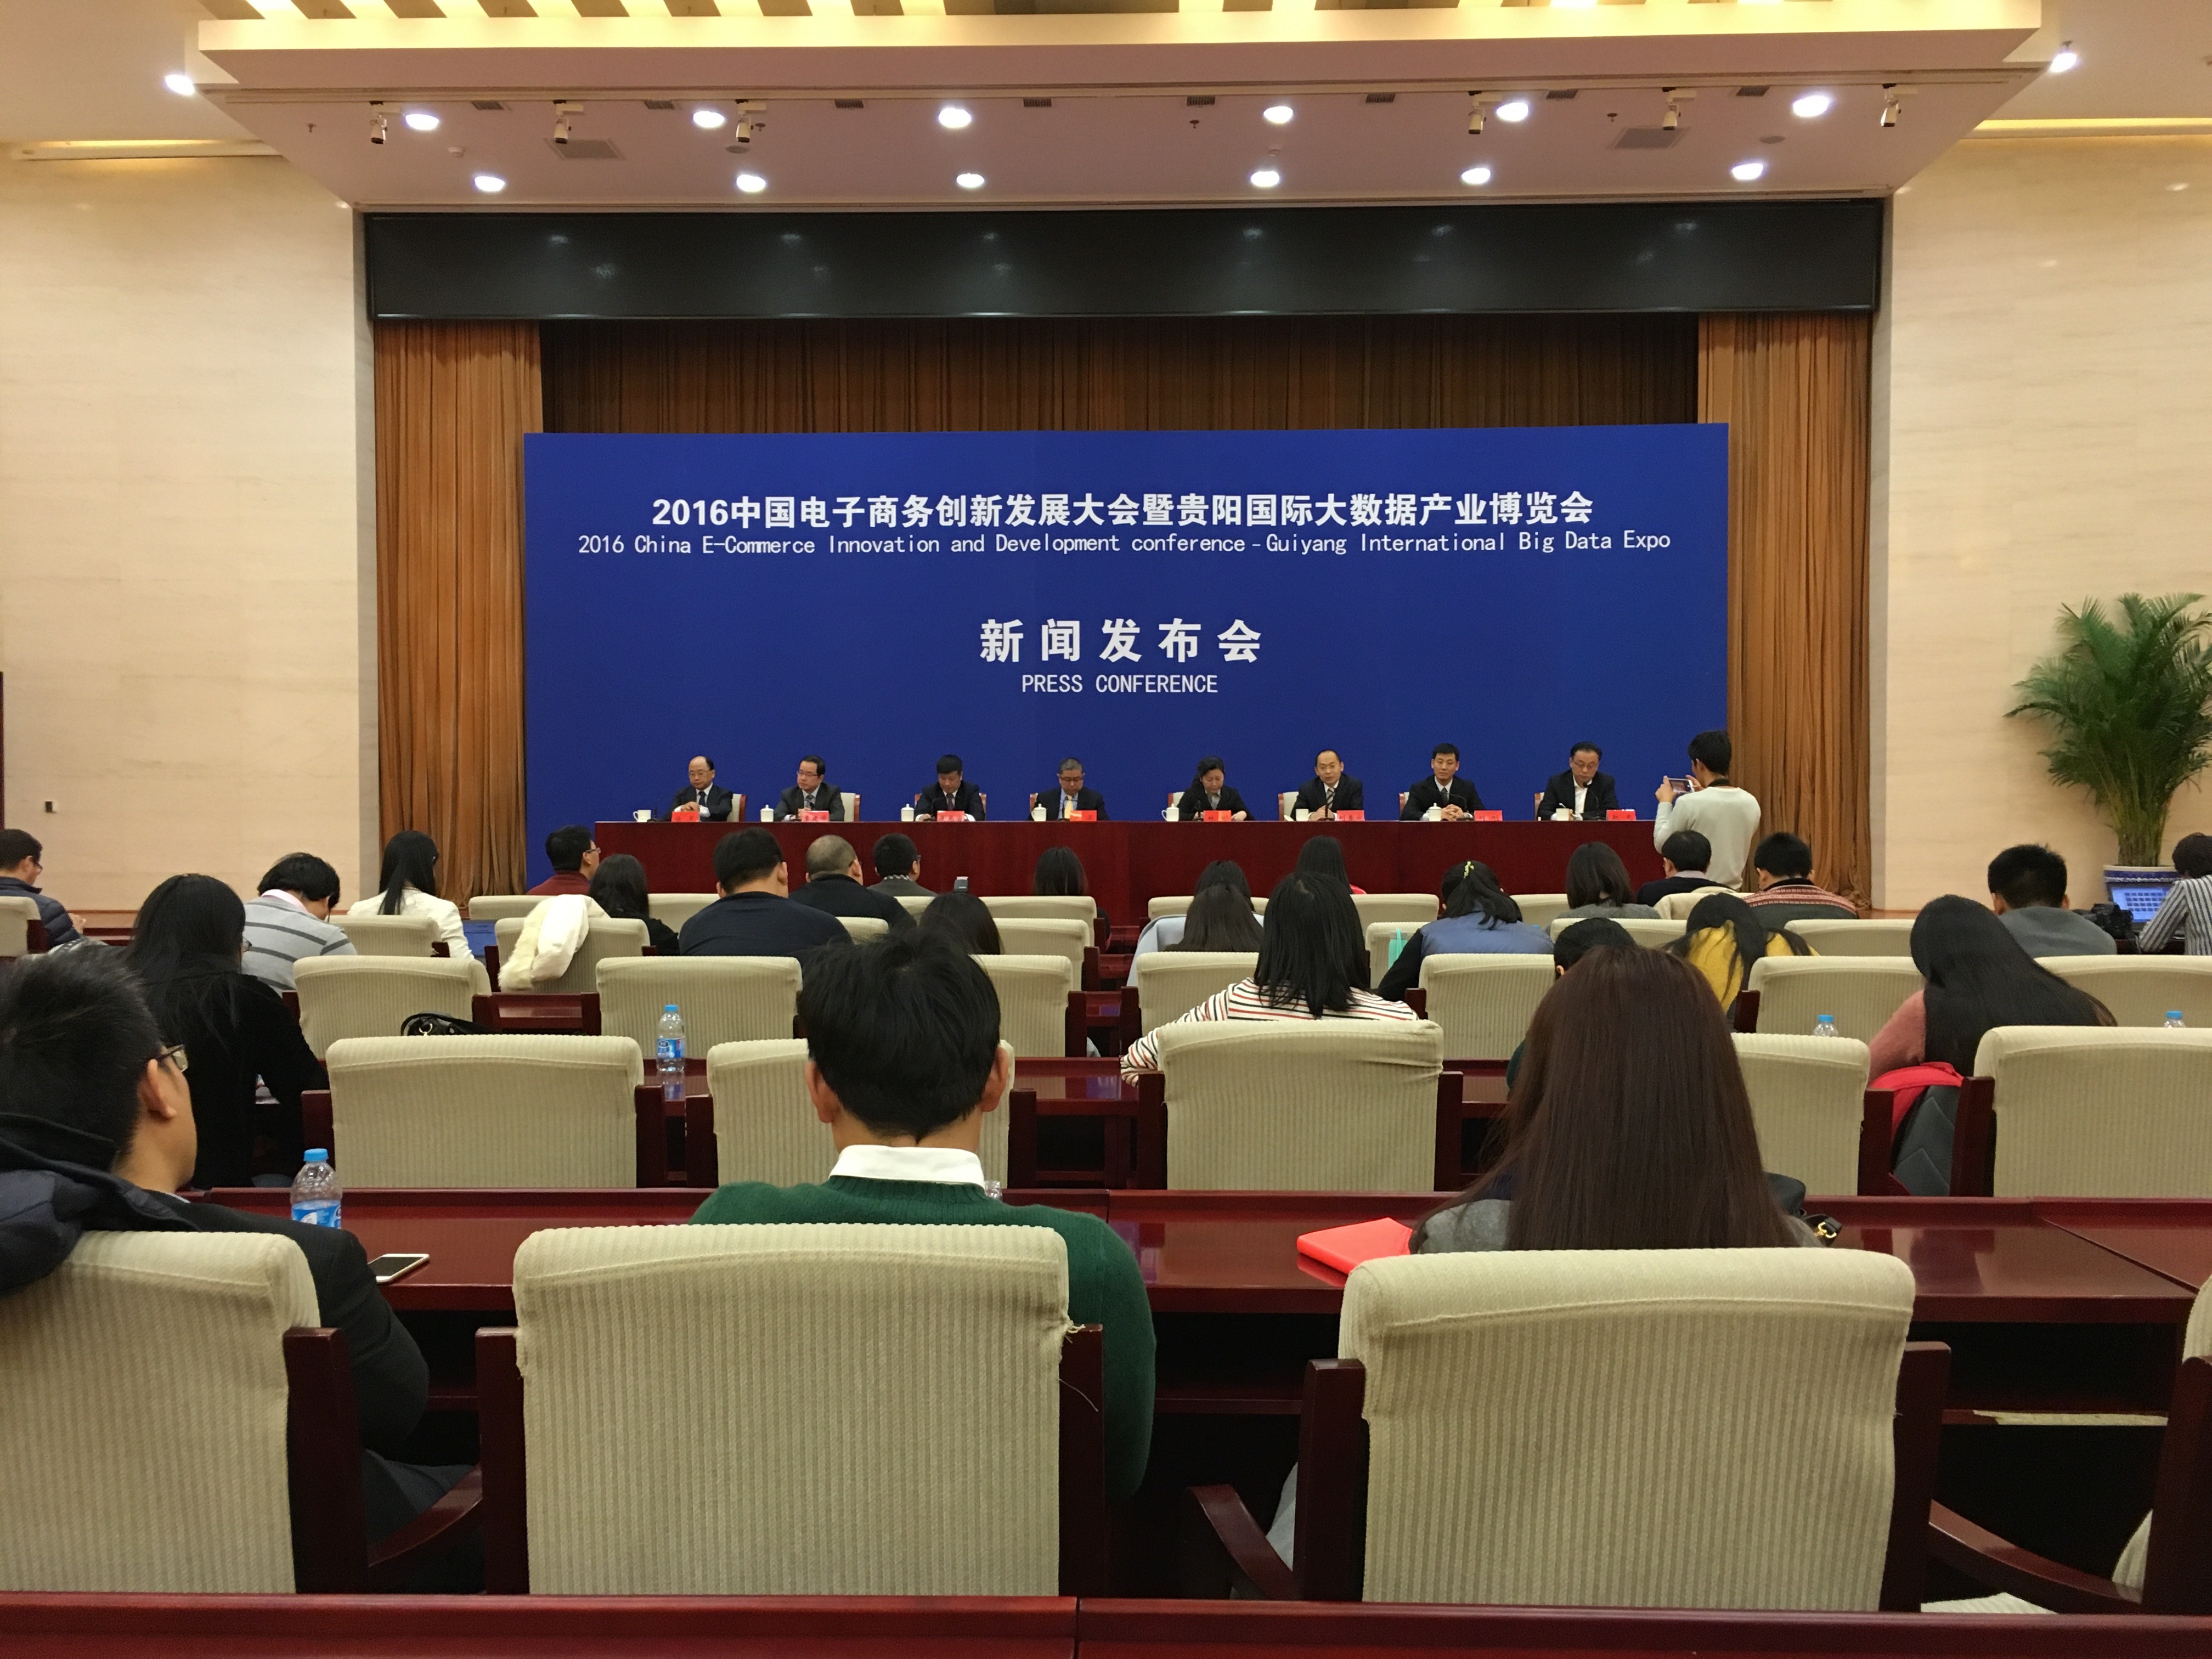 2016中国贵阳电子商务大会暨贵阳国际大数据